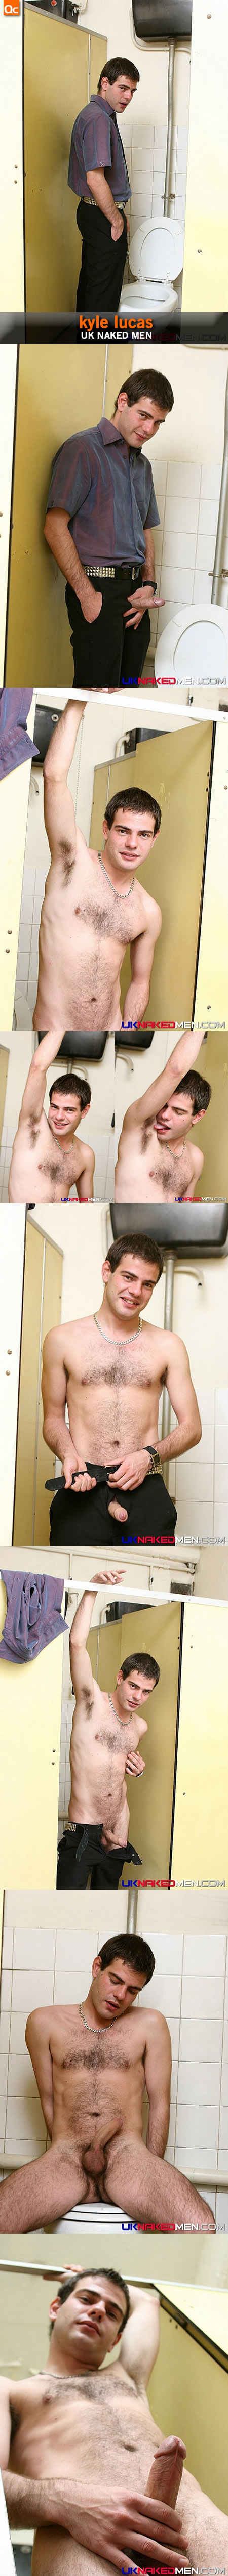 UK Naked Men: Kyle Lucas